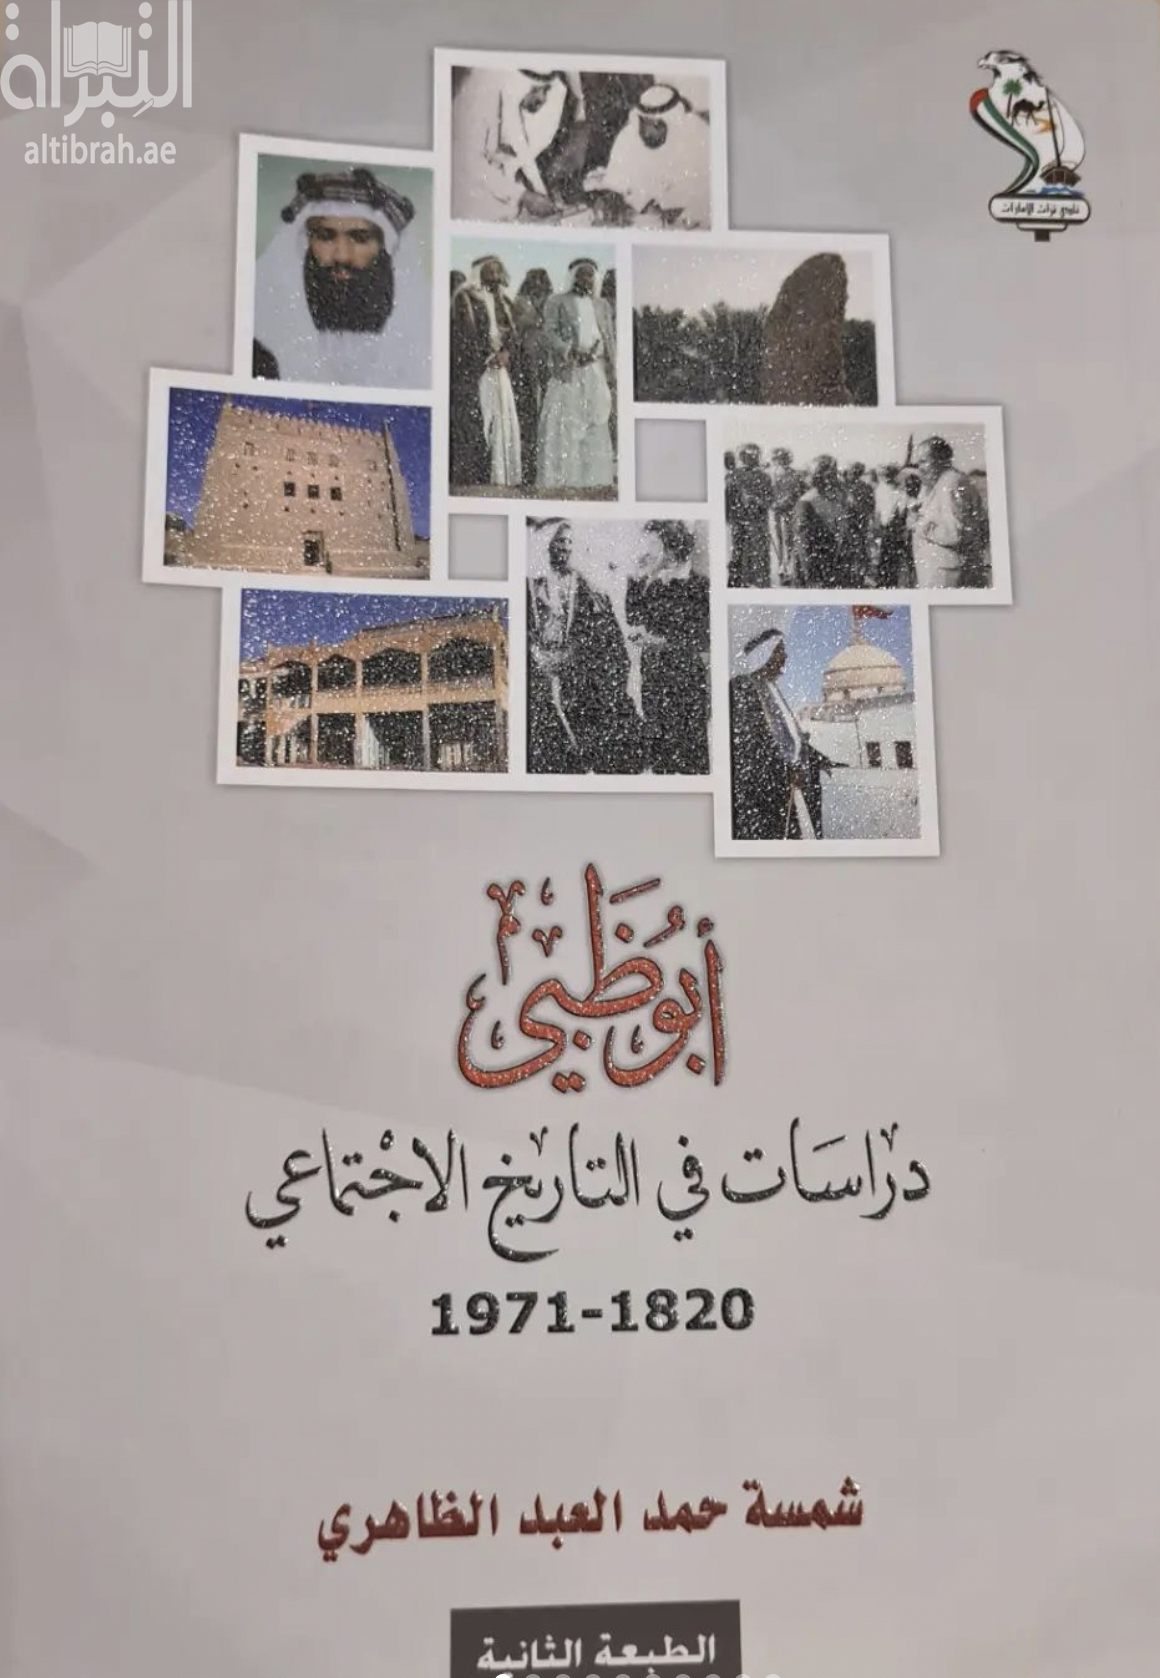 أبوظبي : دراسات في التاريخ الإجتماعي 1820 - 1971